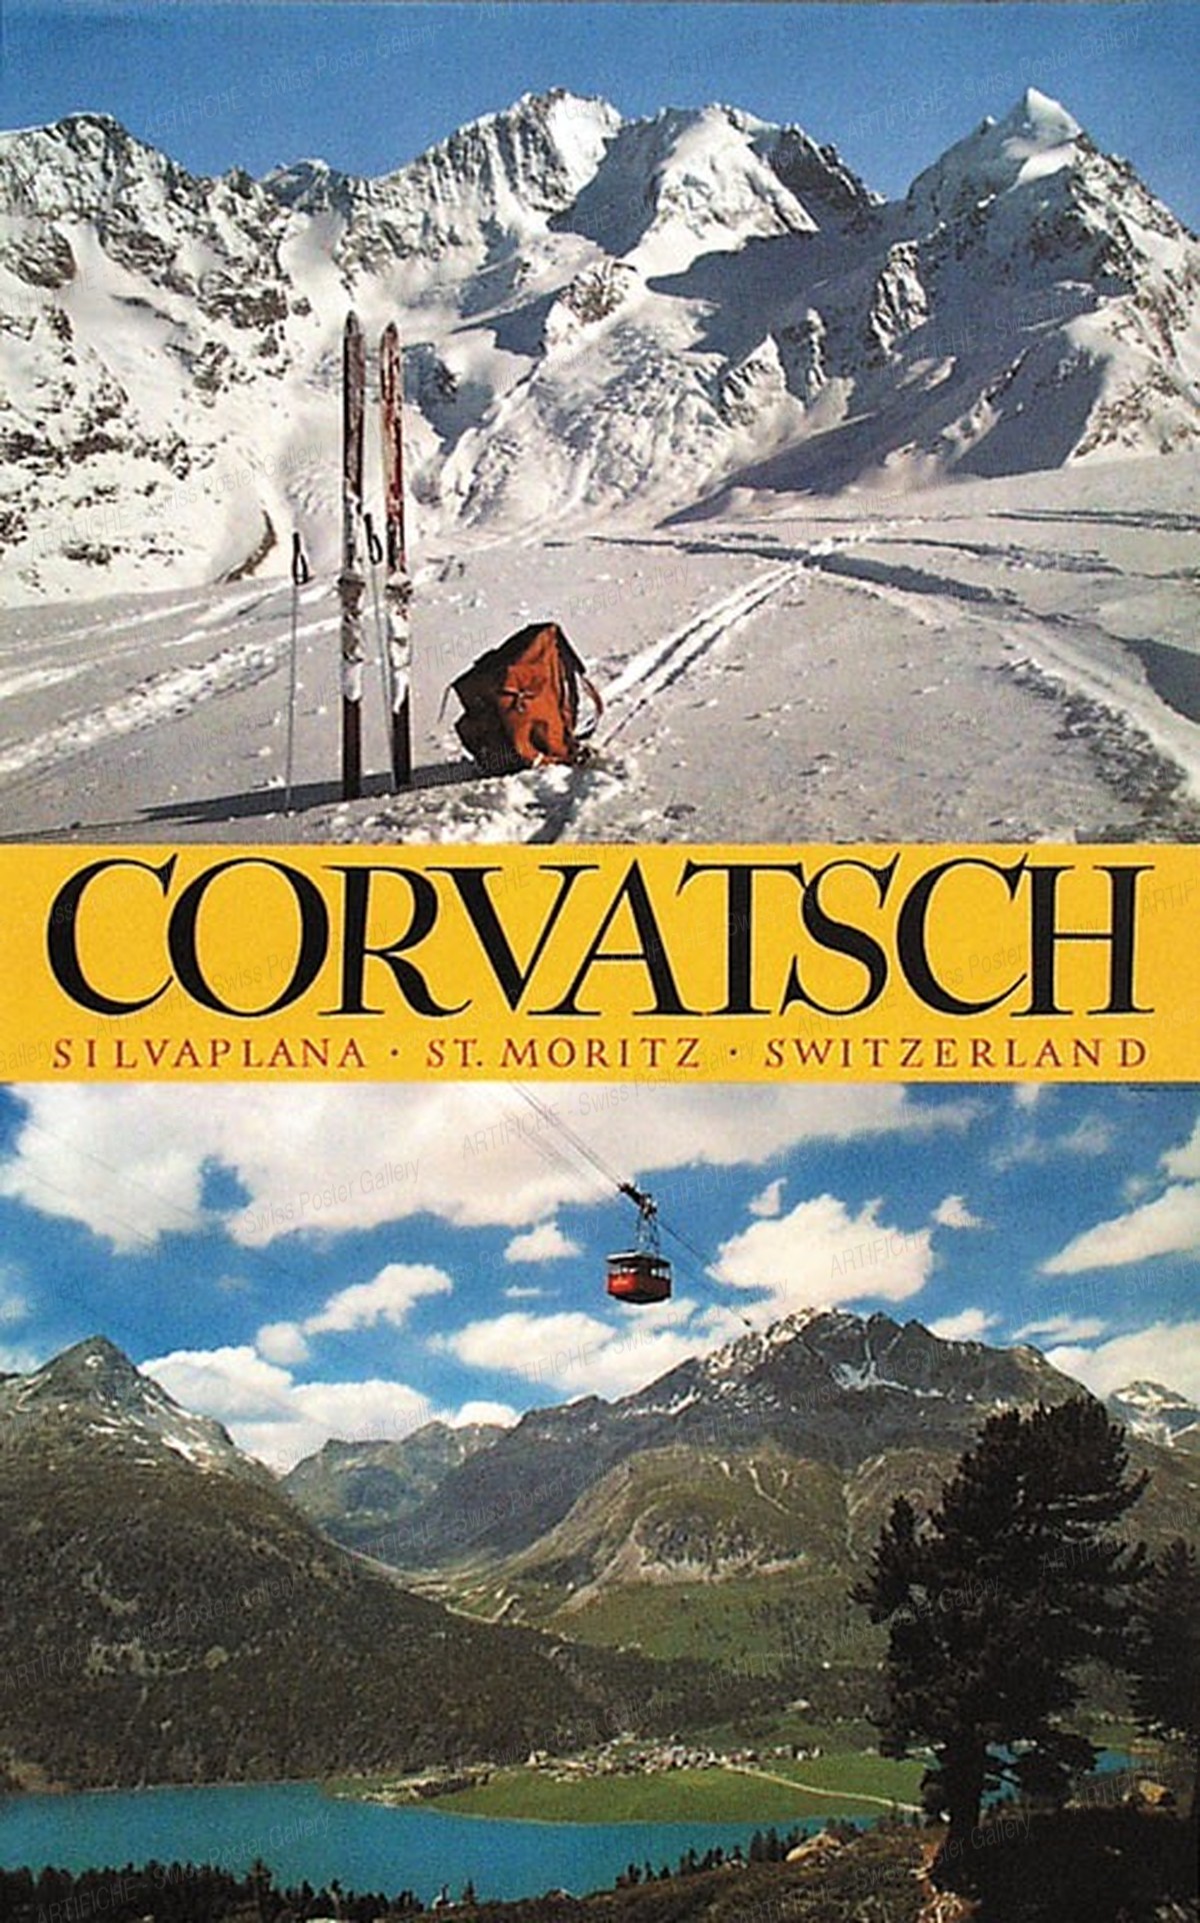 CORVATSCH – Silvaplana – St. Moritz – Switzerland, Heinrich Steiner